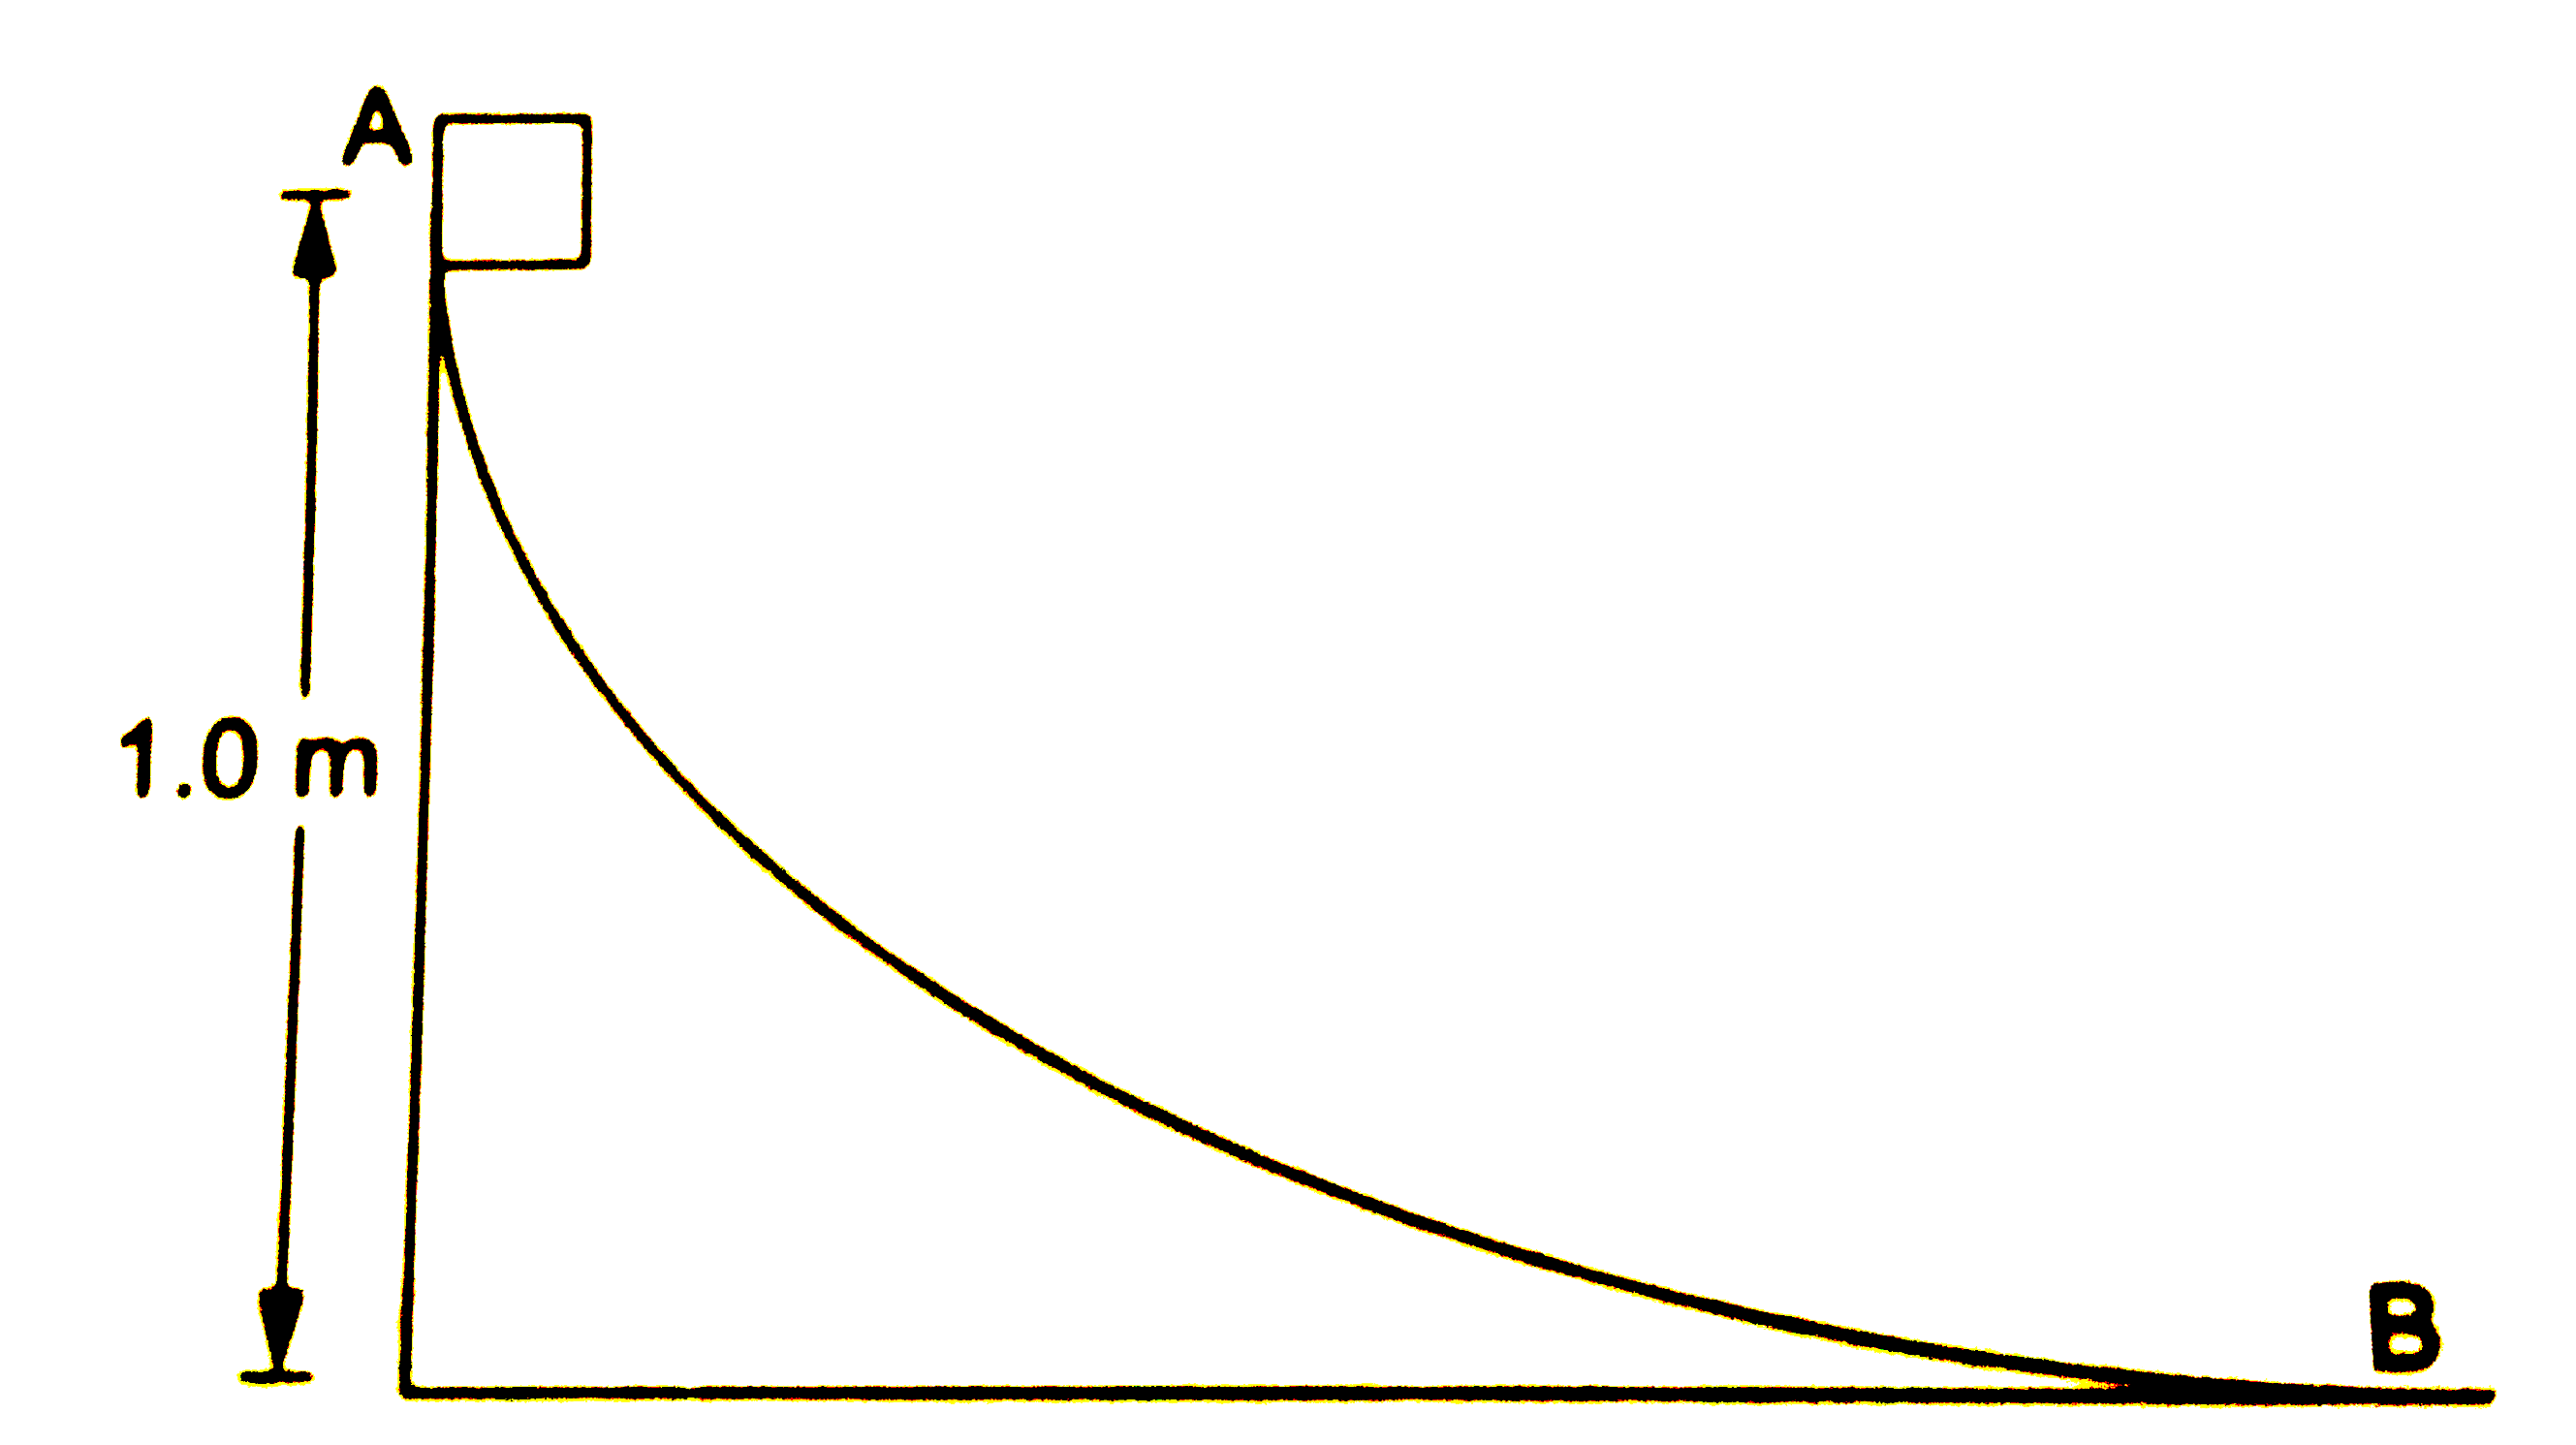 10 N भार वाला एक गुटका A से  B को मिलानेवाले एक चिकने एंव वक्राकार पथ पर फिसलता हैं । पथ का अंतिम सिरा एक क्षैतिज सतह से मिलता हैं जिसके साथ गुटके का घर्षण गुणांक 0.20 हैं । यदि गुटका पथ पर क्षैतिज सतह से 1.0 m ऊँचाई से फिसलना प्रारंभ करे , तो यह क्षैतिज सतह पर कितनी दूरी तक गति करेगा ?